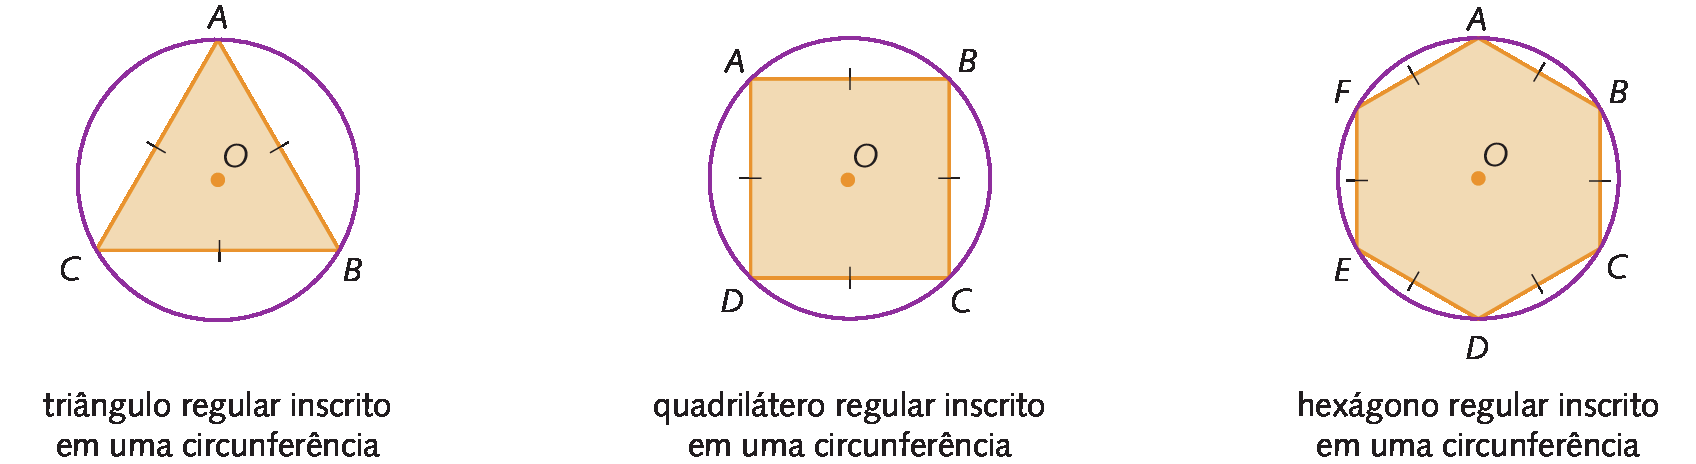 Figura geométrica. Circunferência de centro O. Dentro, triângulo ABC com os vértices pertencentes à circunferência e os lados congruentes. Cota: triângulo regular inscrito em uma circunferência. Ao lado, figura geométrica. Circunferência de centro O. Dentro, quadrilátero ABCD com os vértices pertencentes à circunferência e os lados congruentes. Cota: quadrilátero regular inscrito em uma circunferência. Ao lado, figura geométrica. Circunferência de centro O. Dentro, hexágono ABCDEF com os vértices pertencentes à circunferência e os lados congruentes.